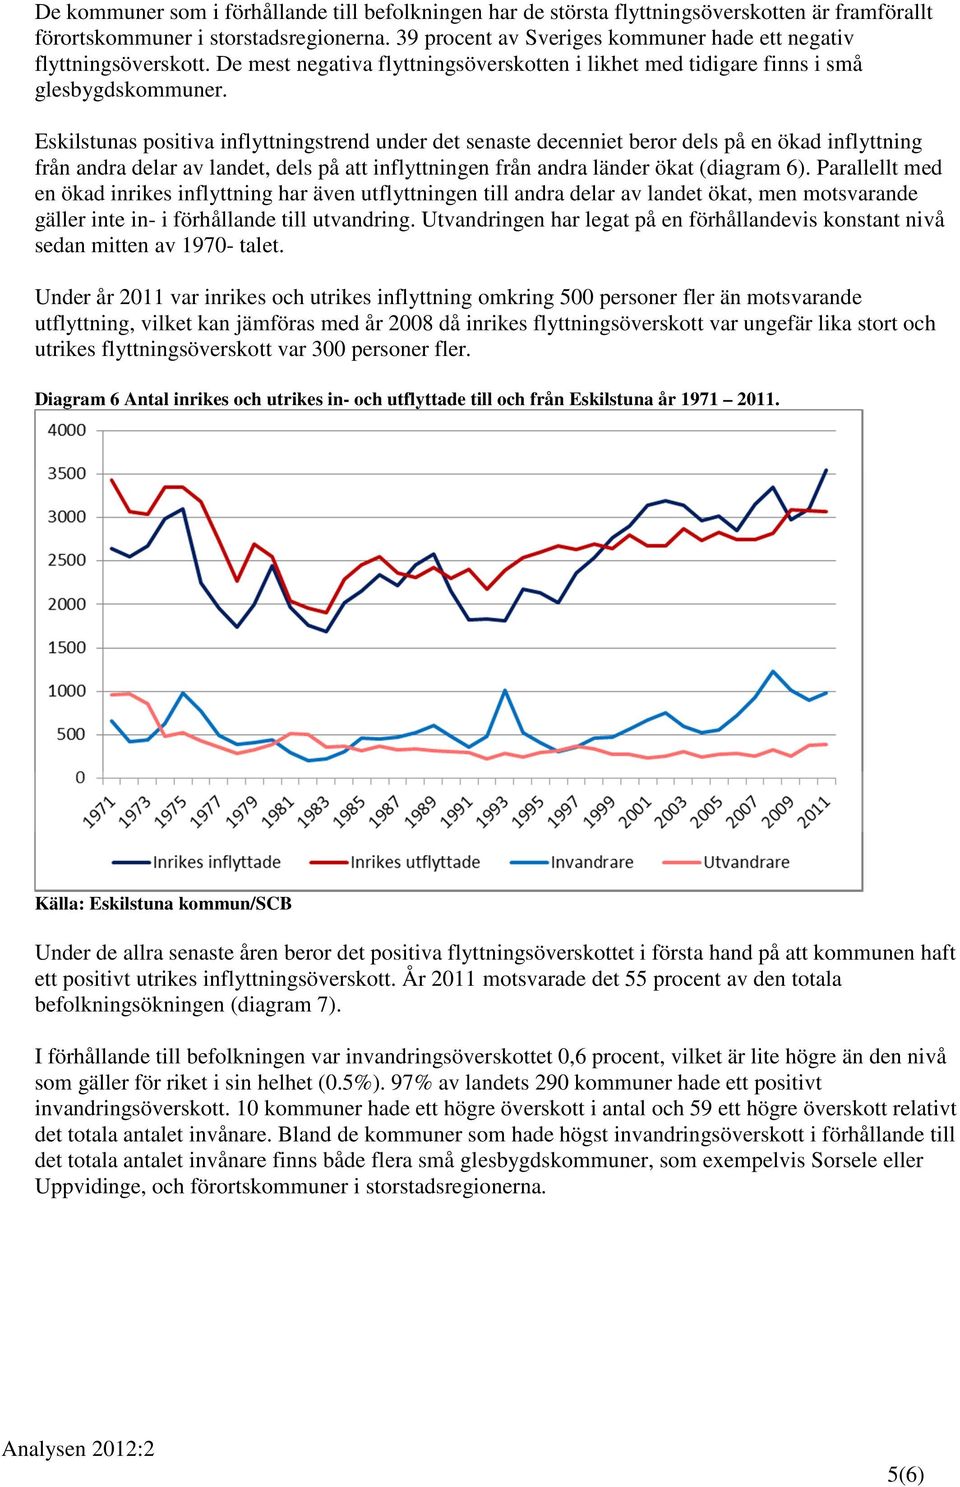 Eskilstunas positiva inflyttningstrend under det senaste decenniet beror dels på en ökad inflyttning från andra delar av landet, dels på att inflyttningen från andra länder ökat (diagram 6).